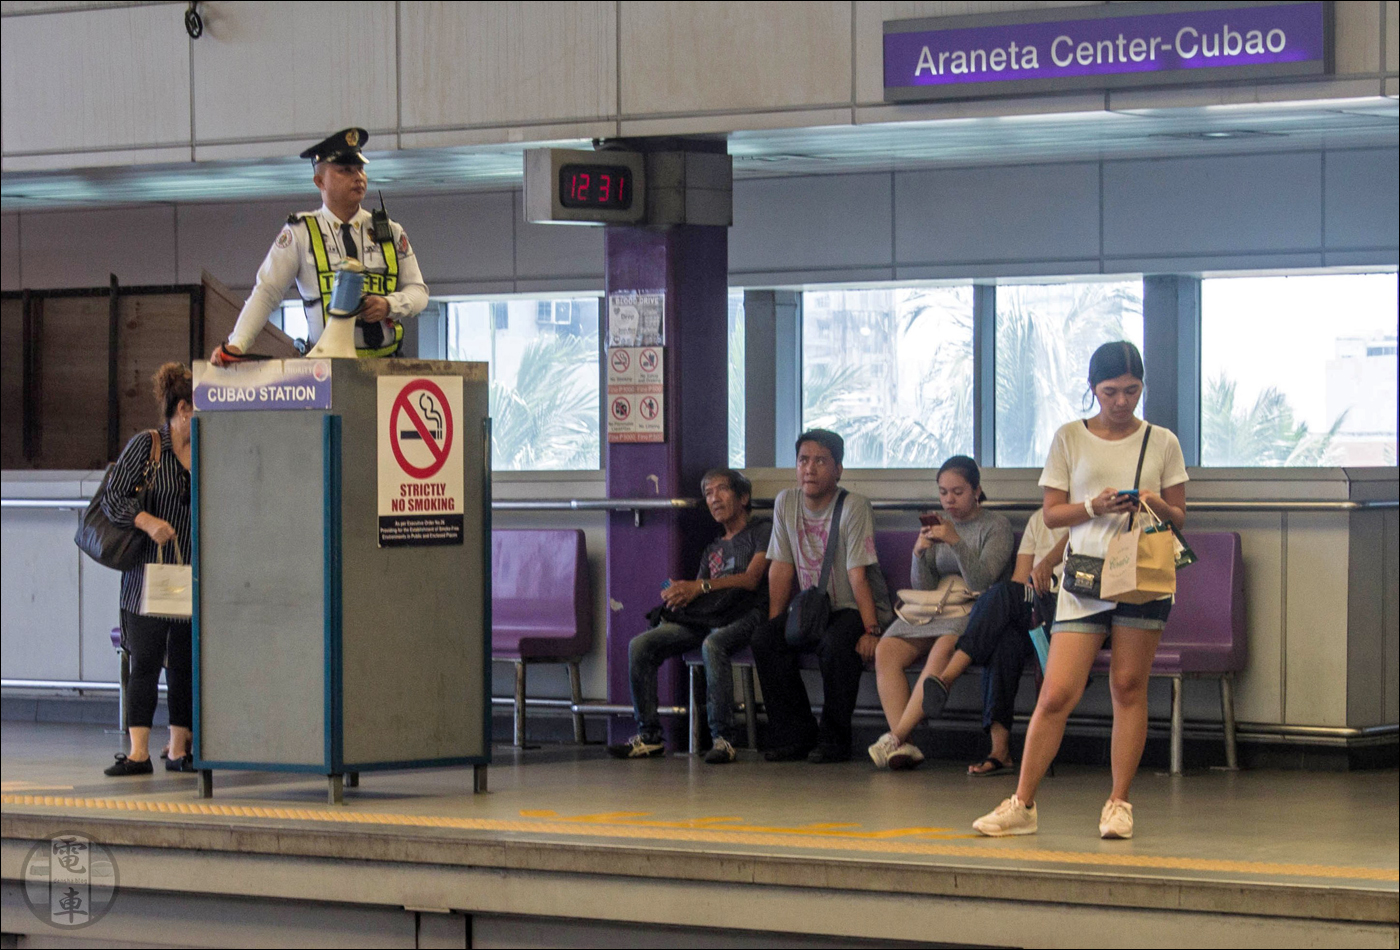 Valamennyi LRT és MRT megállóban ehhez hasonló peronőrök utasítják rendre az esetleg megvadult tömeget. Hasonló személyzettel a PNR vonalán is találkozhatunk, csak ők nem kaptak ilyen szép kakasülőt.